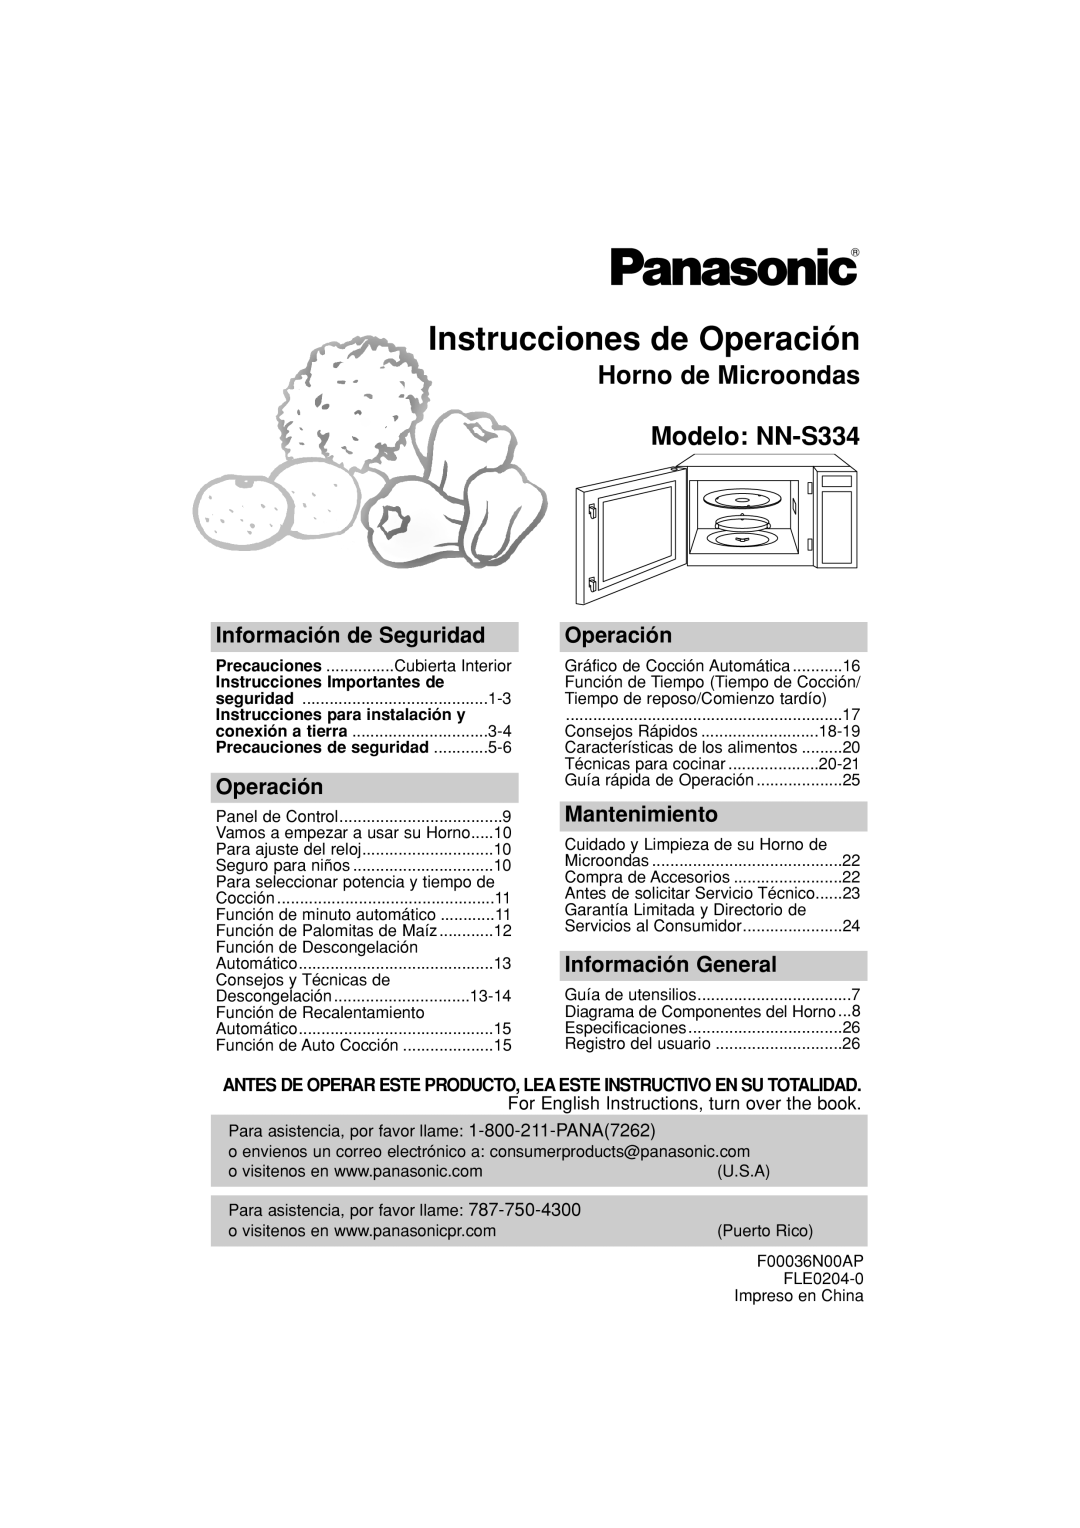 Panasonic Instrucciones de Operación, Horno de Microondas Modelo: NN-S334, Información de Seguridad, Mantenimiento 